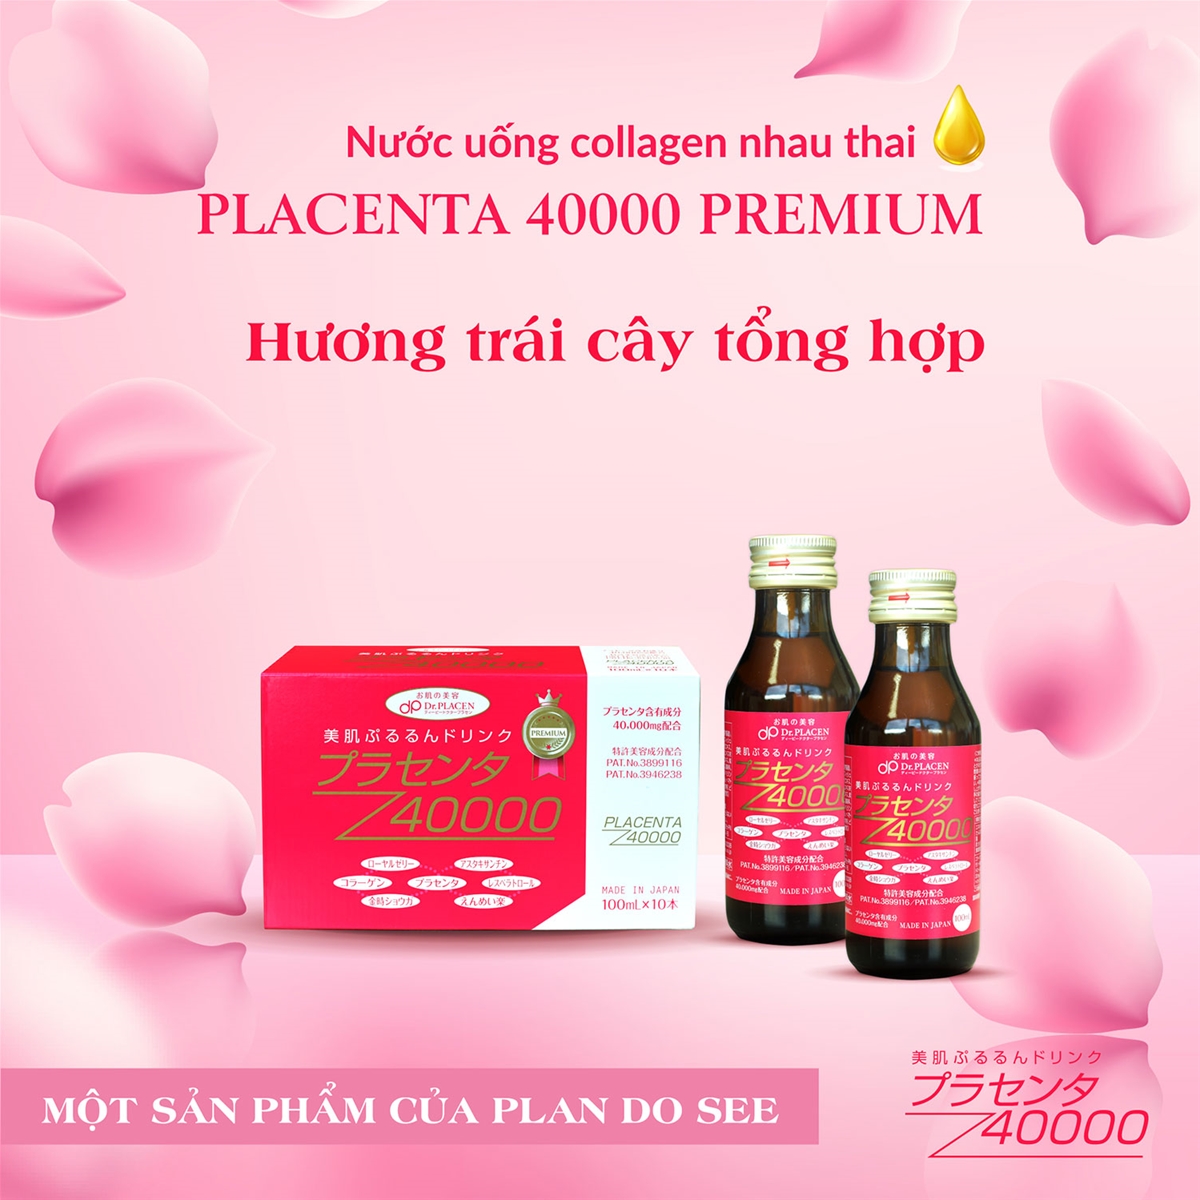 Nước uống collagen nhau thai Placenta 40000 Premium